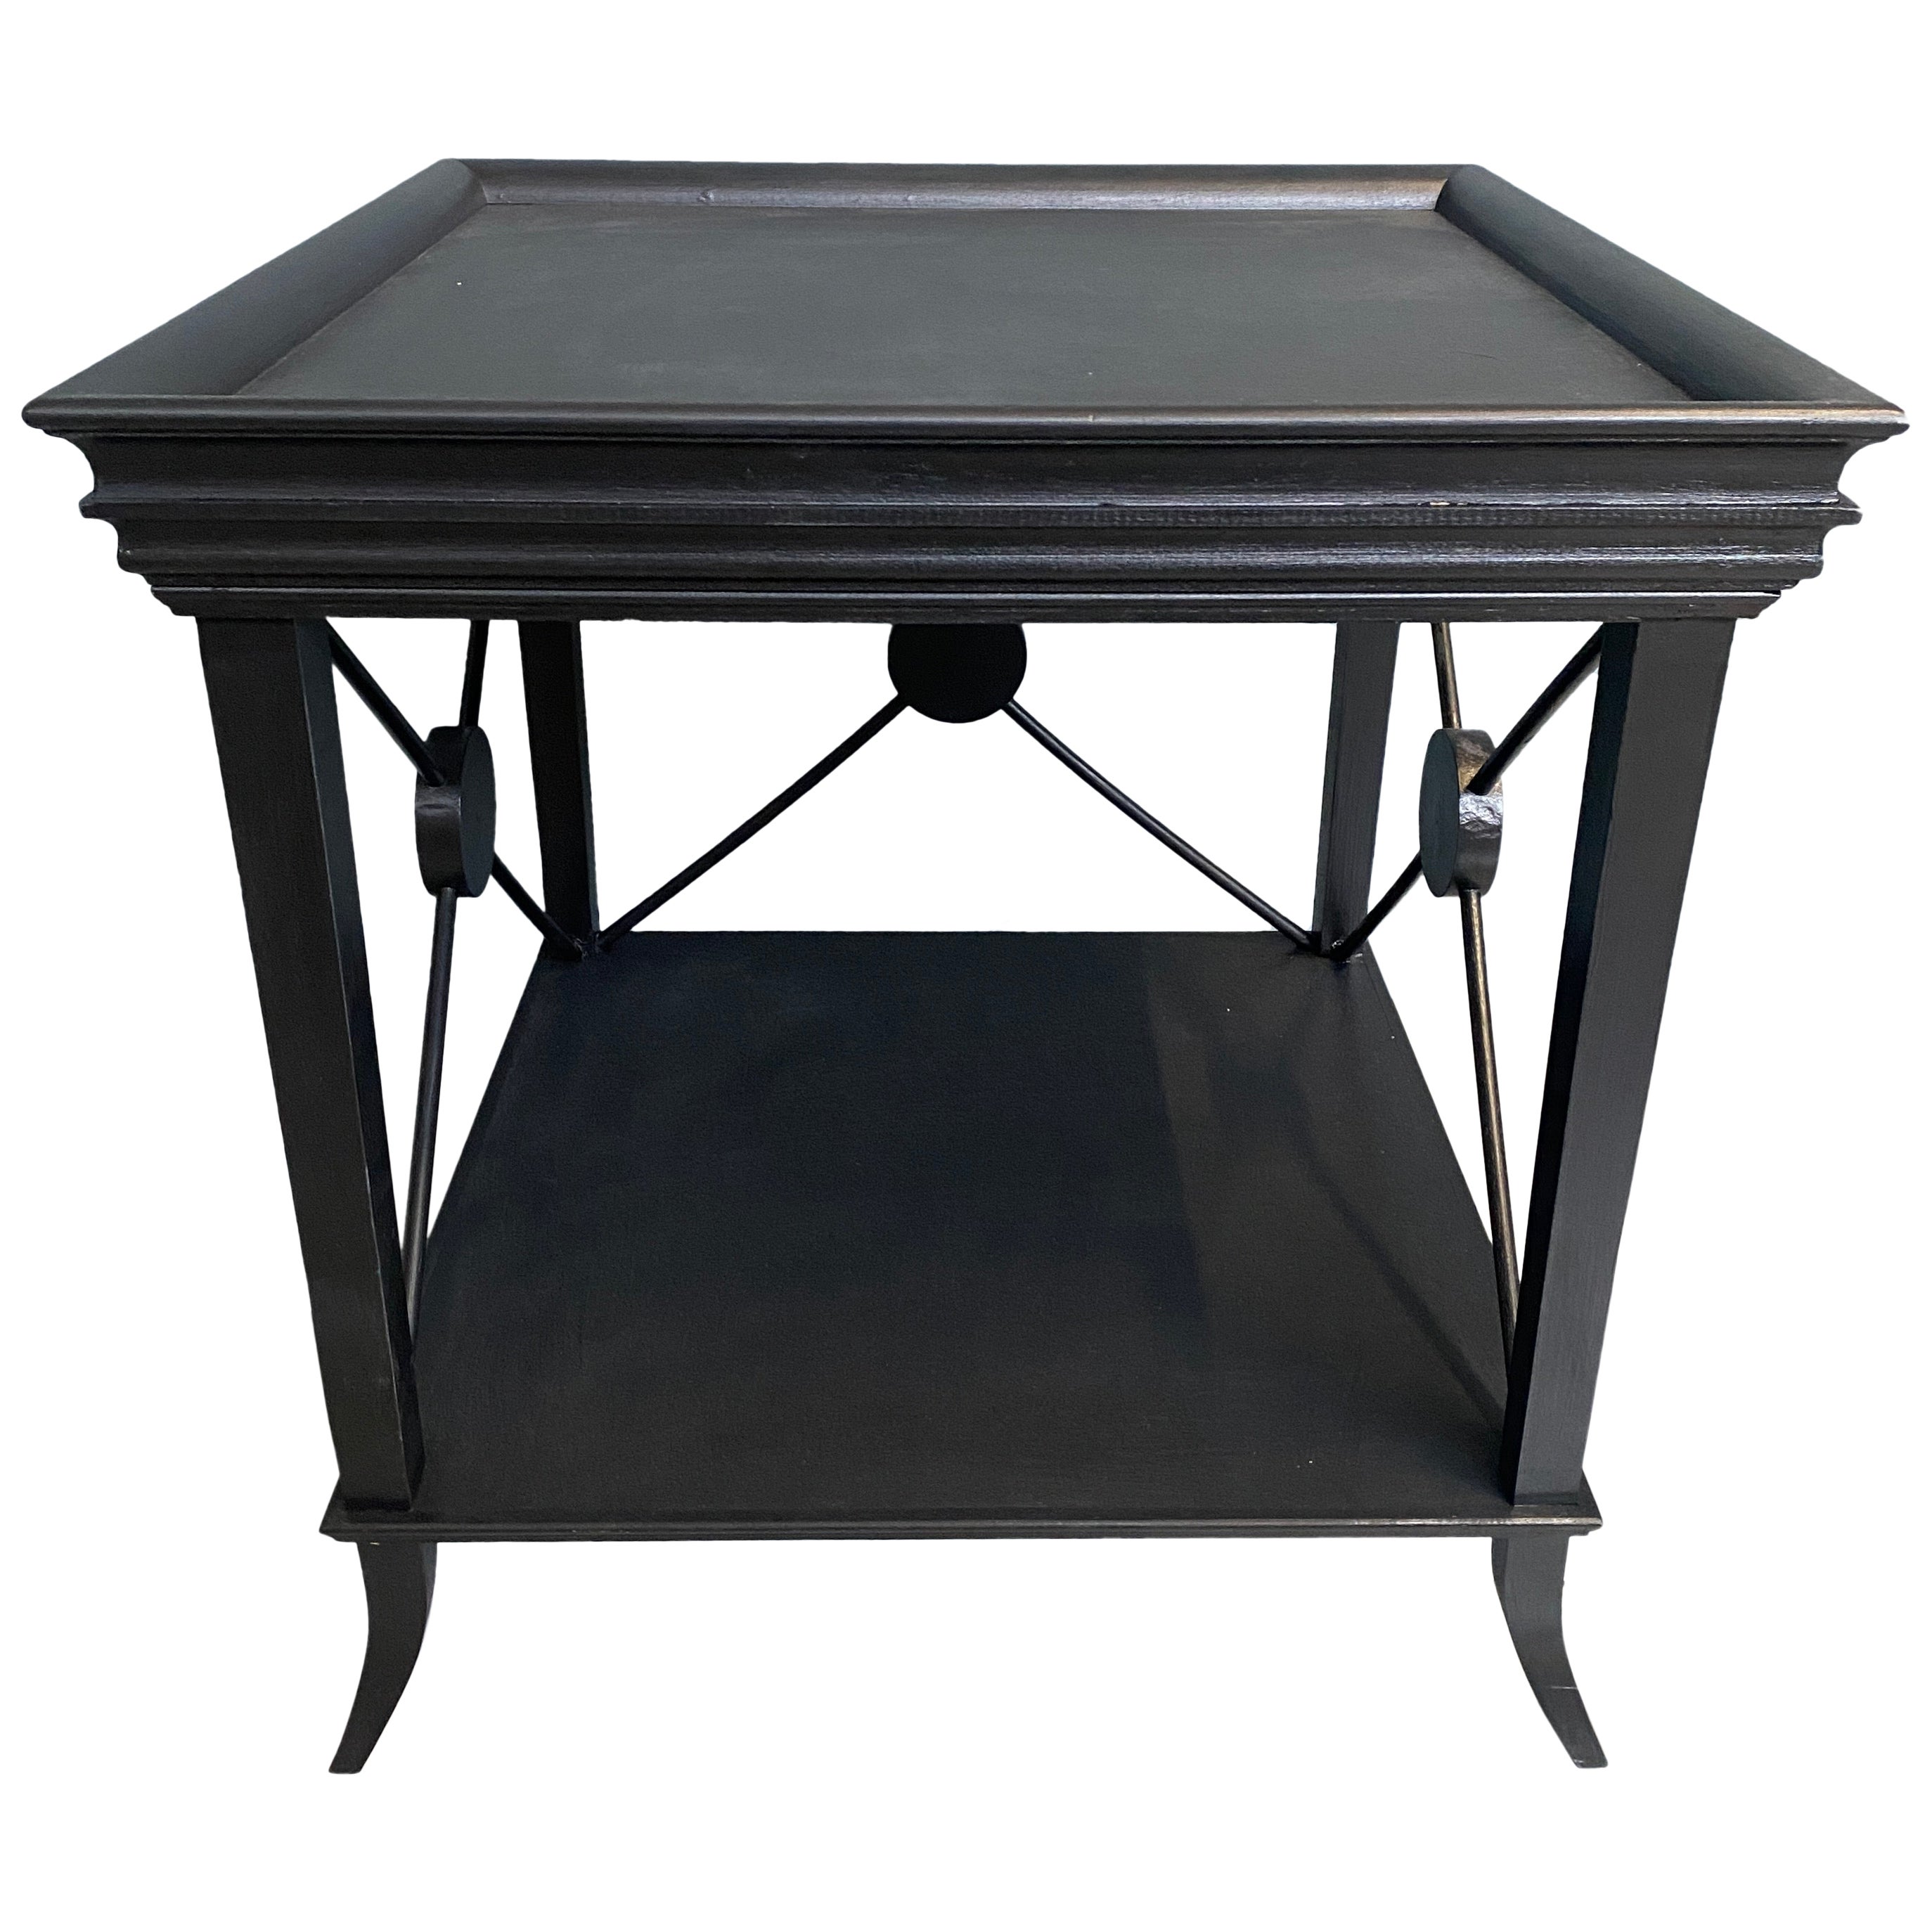 Contemporaneo italiano  Tavolino in legno laccato nero con finiture Wood